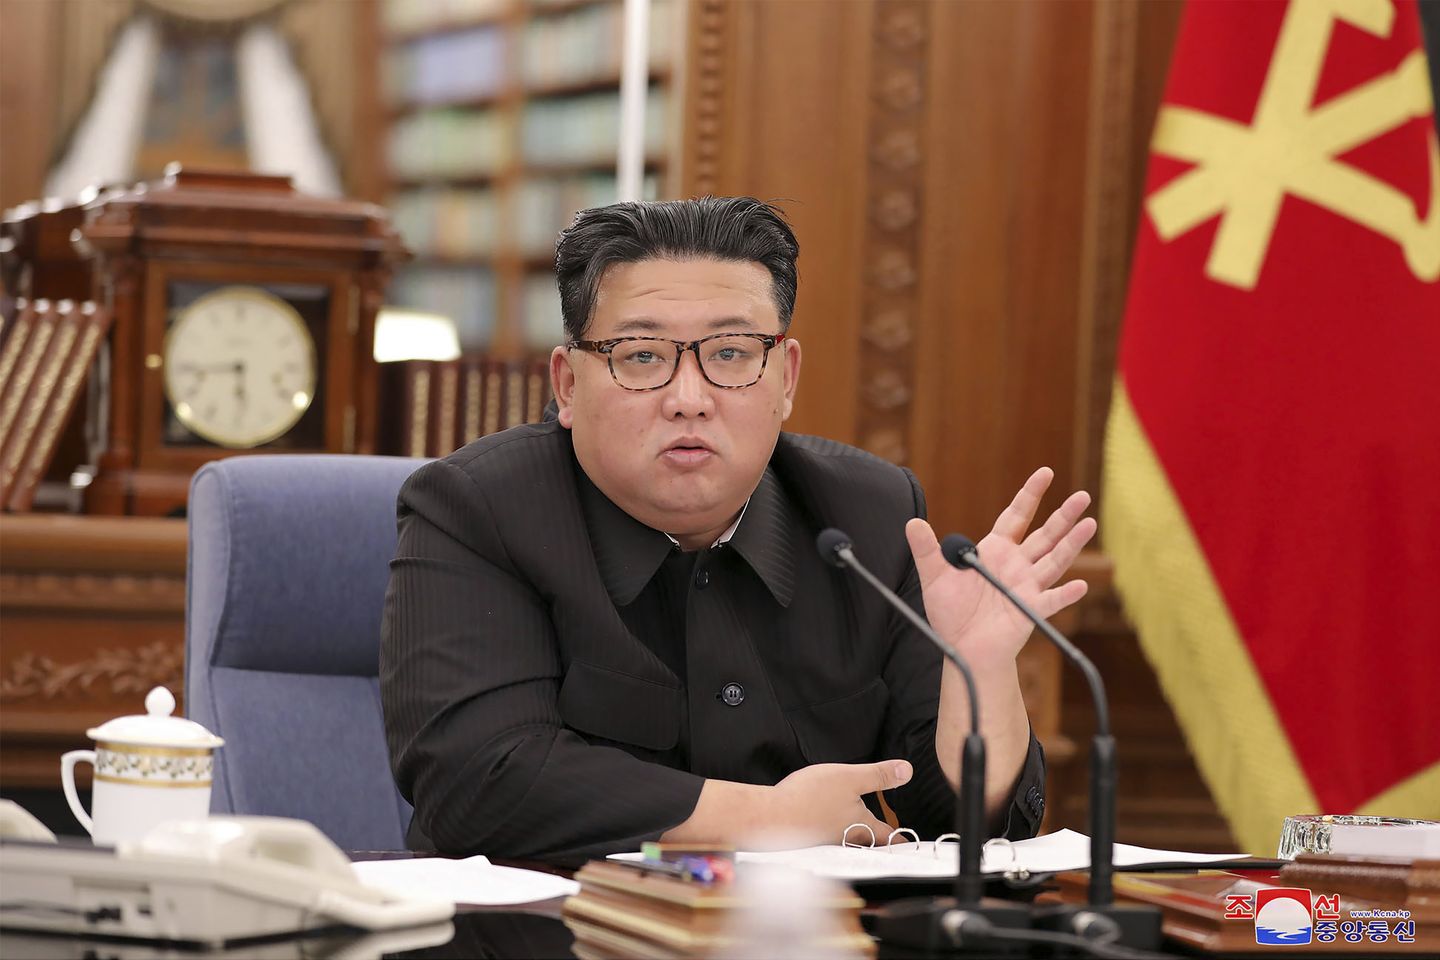 Kuzey Kore, ABD, Japonya ve G. Kore'nin 'hızlı şiddetlenmesine' yanıt olarak savunma geliştireceğini söyledi.